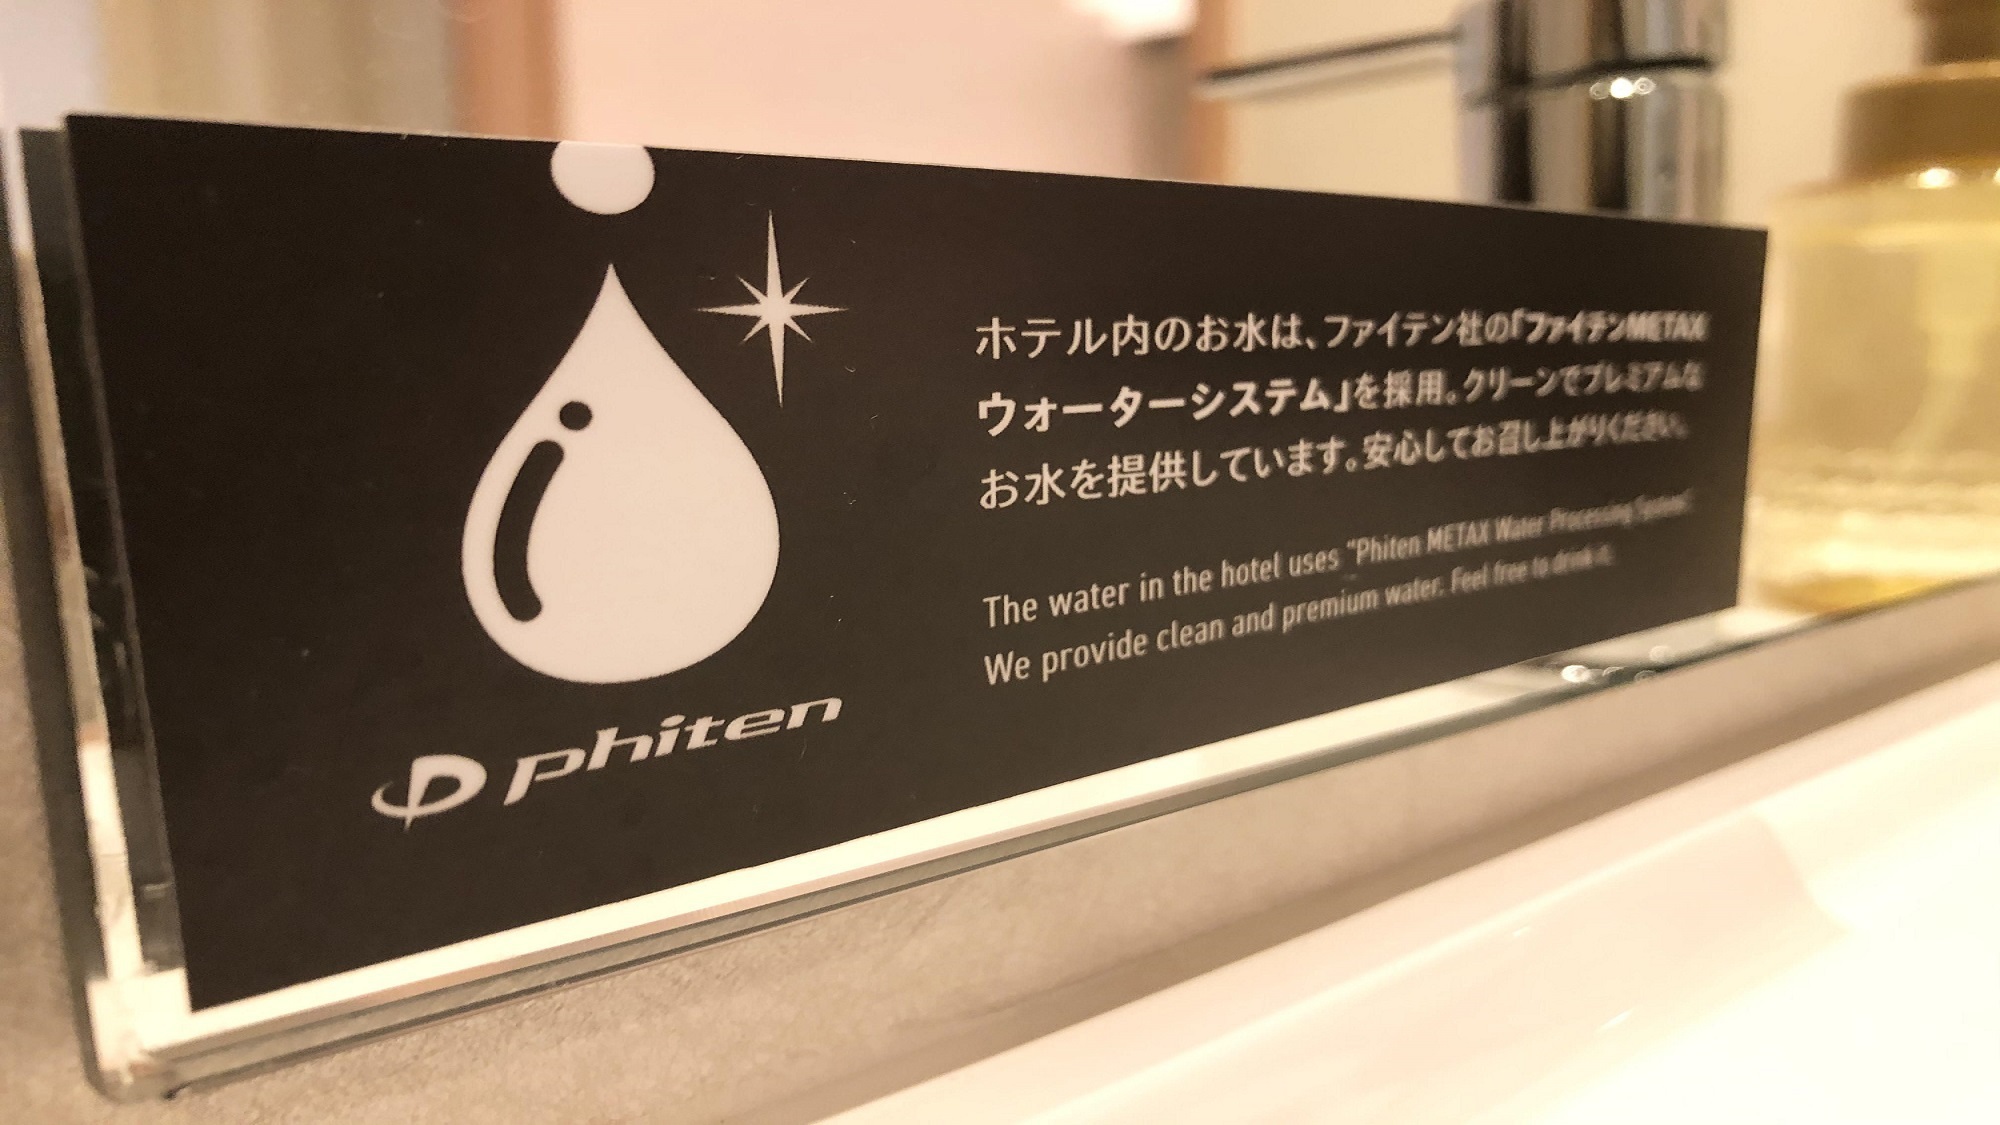 全客室ファイテンウォーター全客室のお水に美容と健康に良いファイテンウォーターを使用しております。